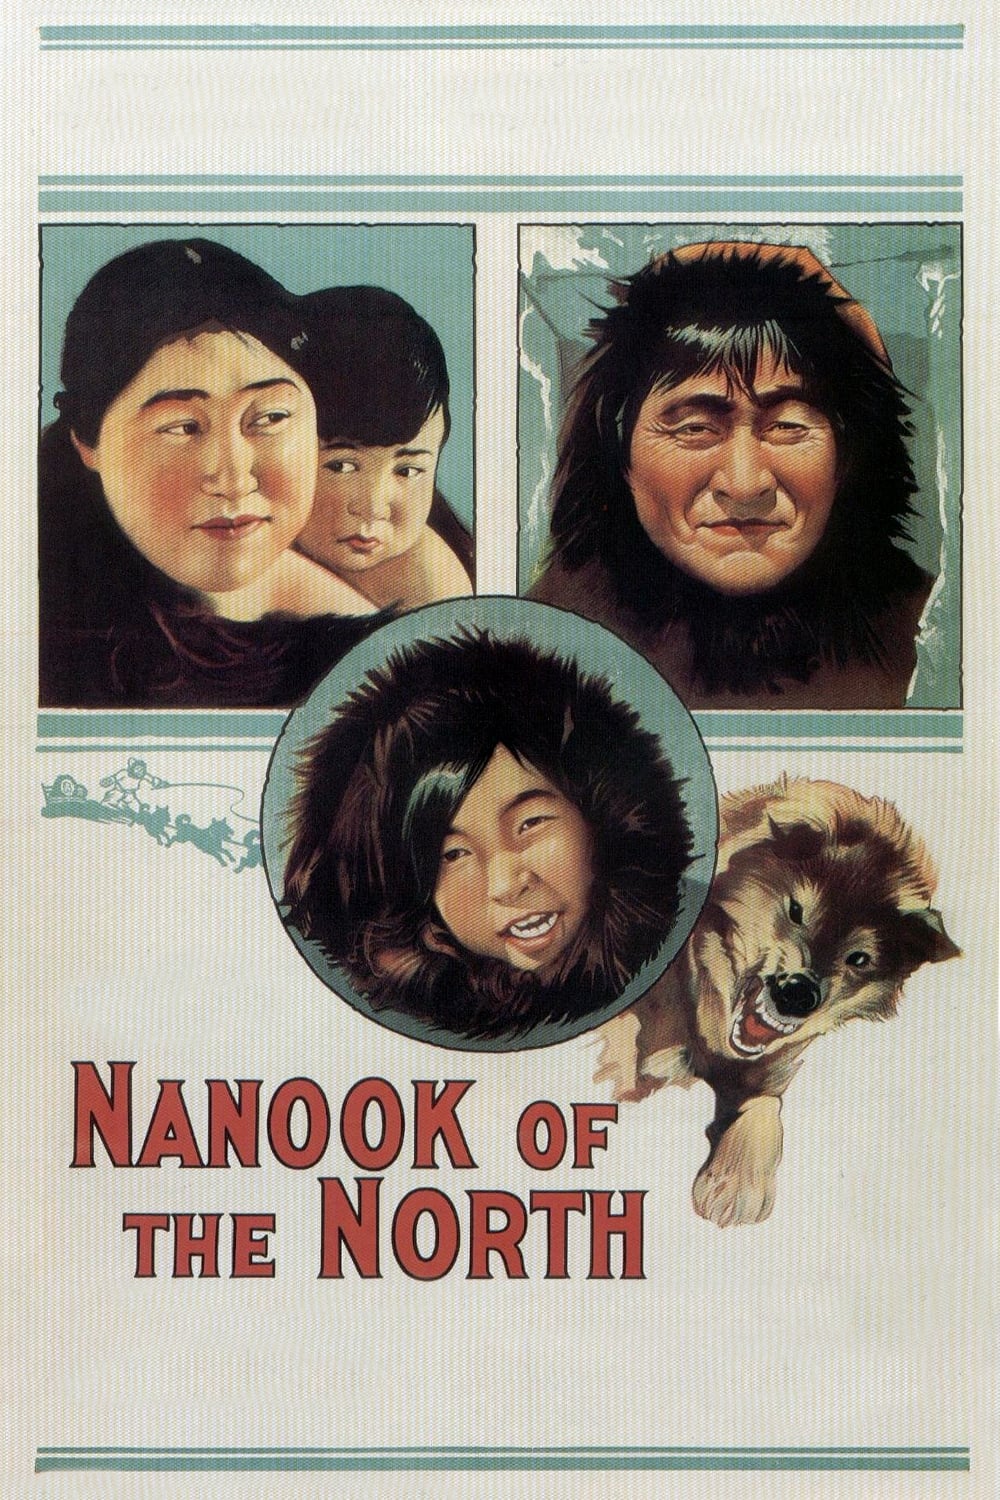 Nanuk, der Eskimo